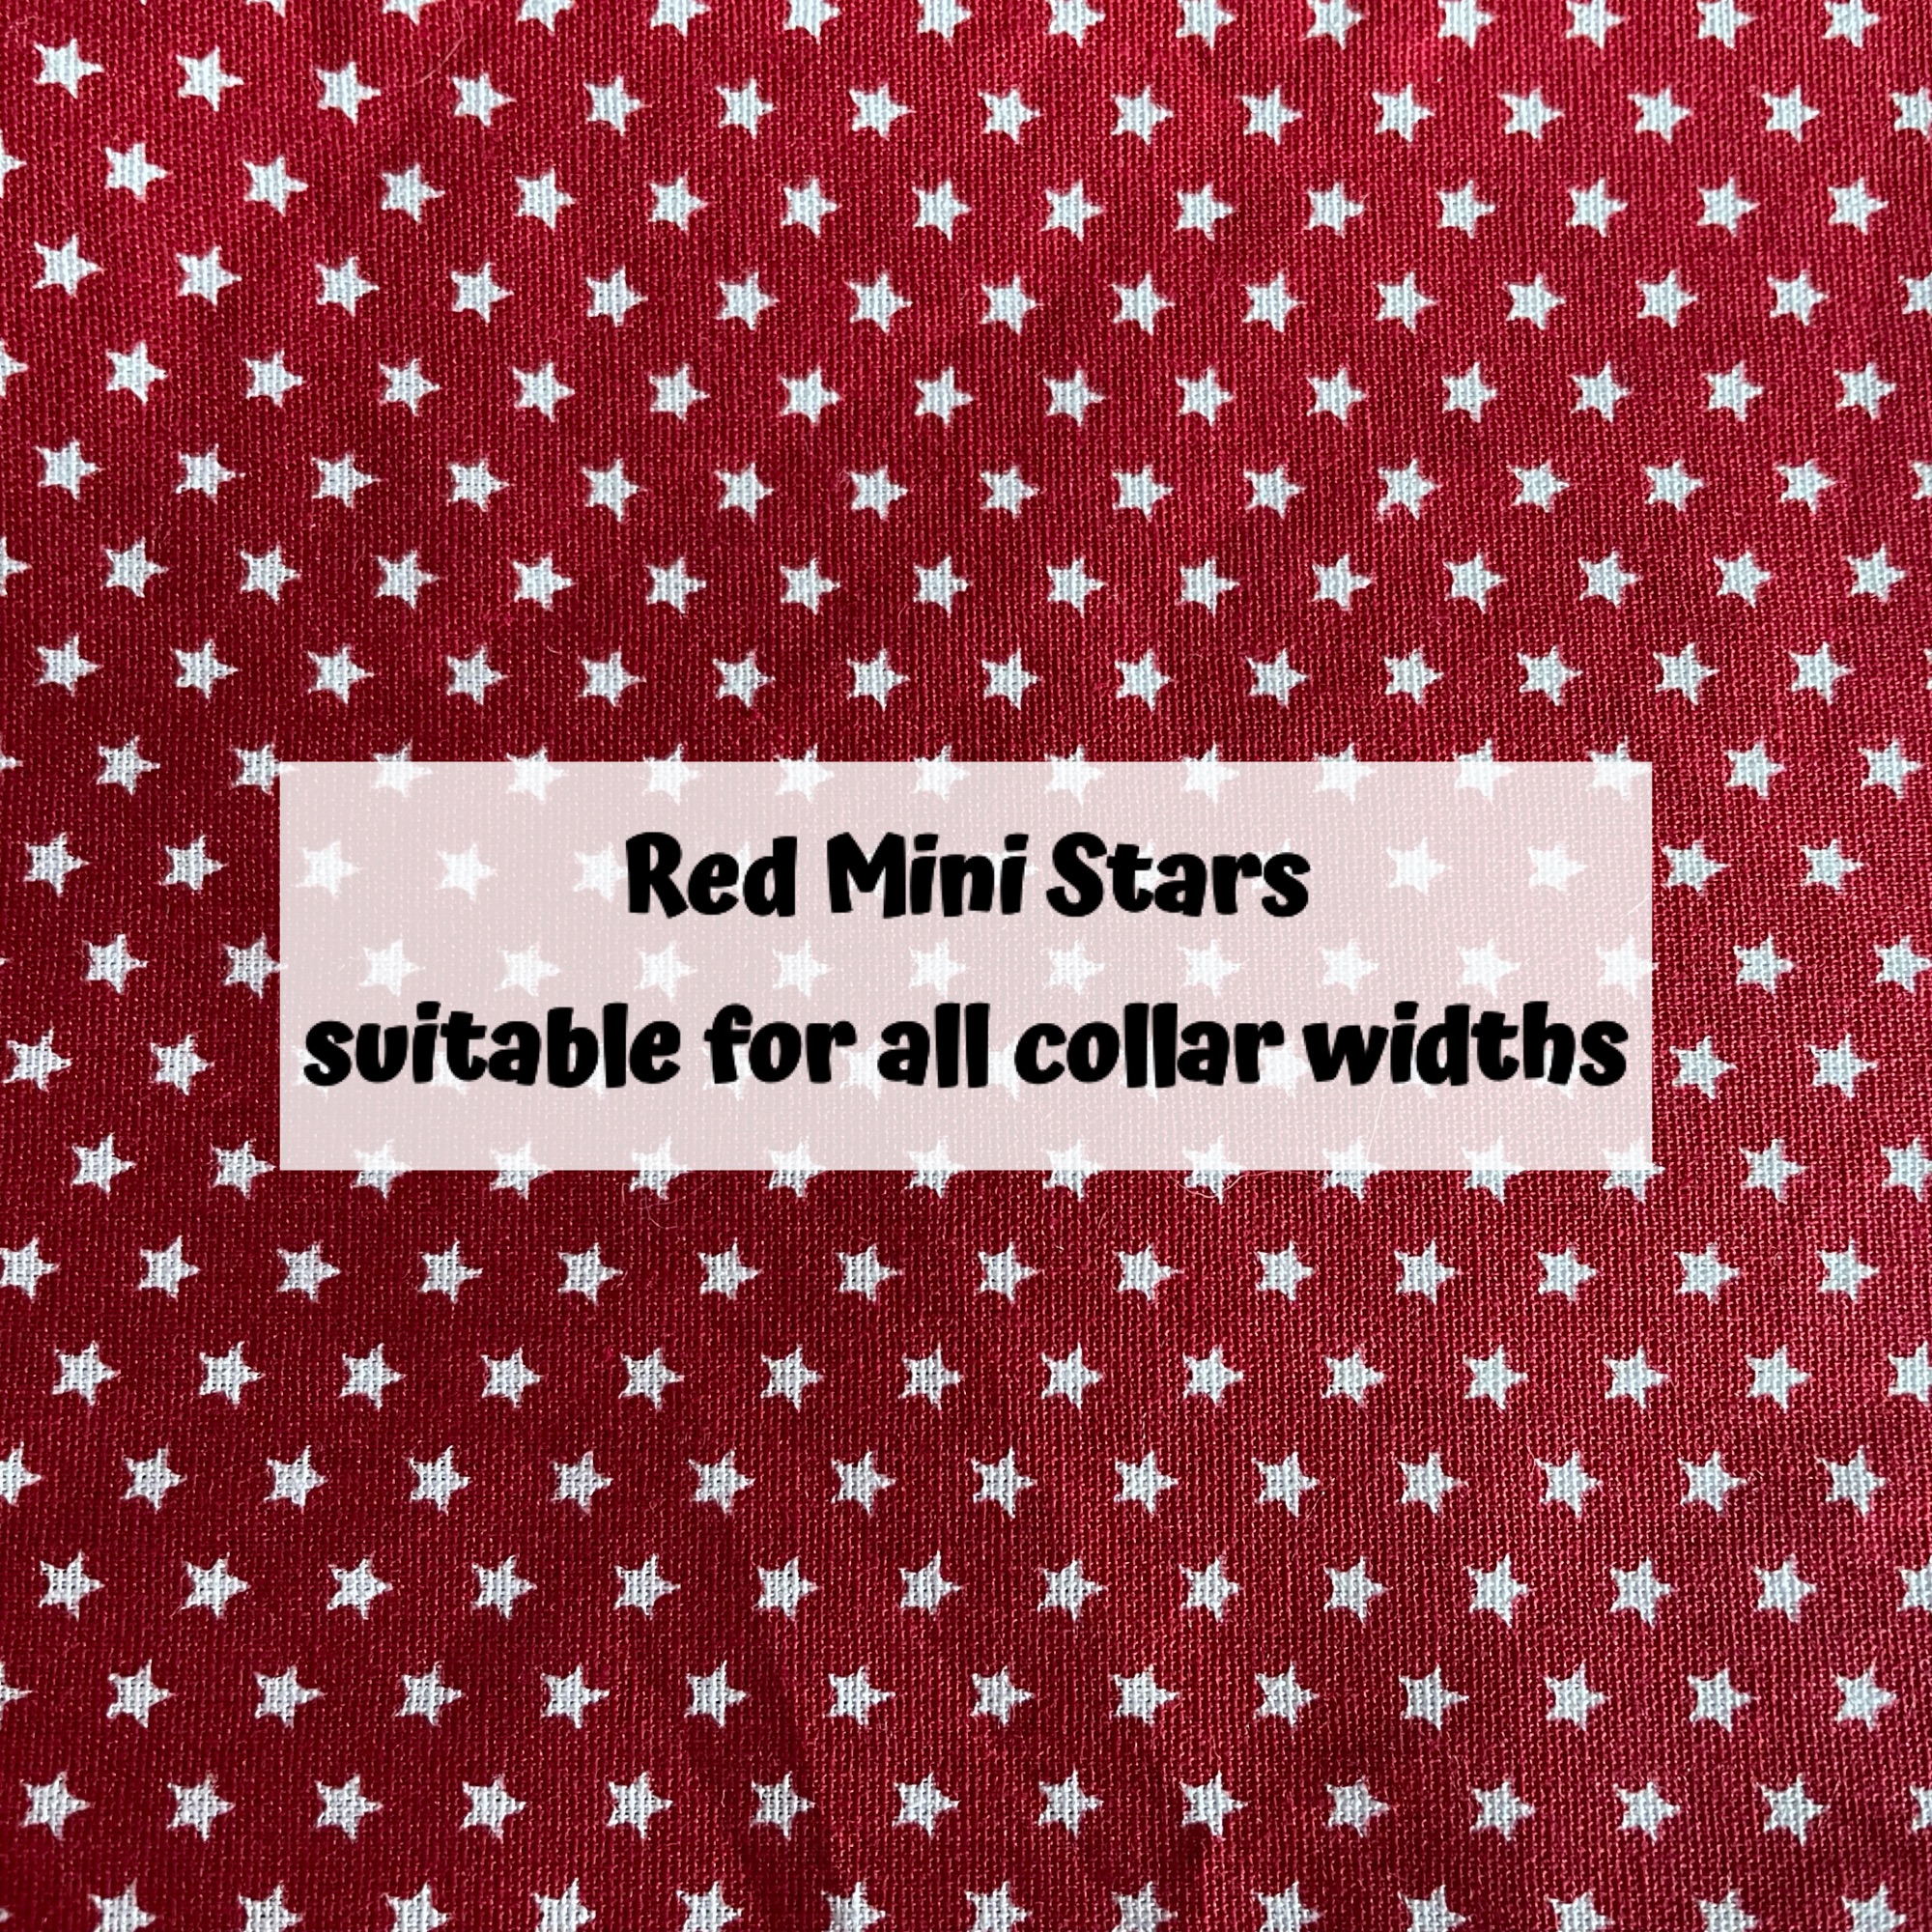 Red Mini Stars